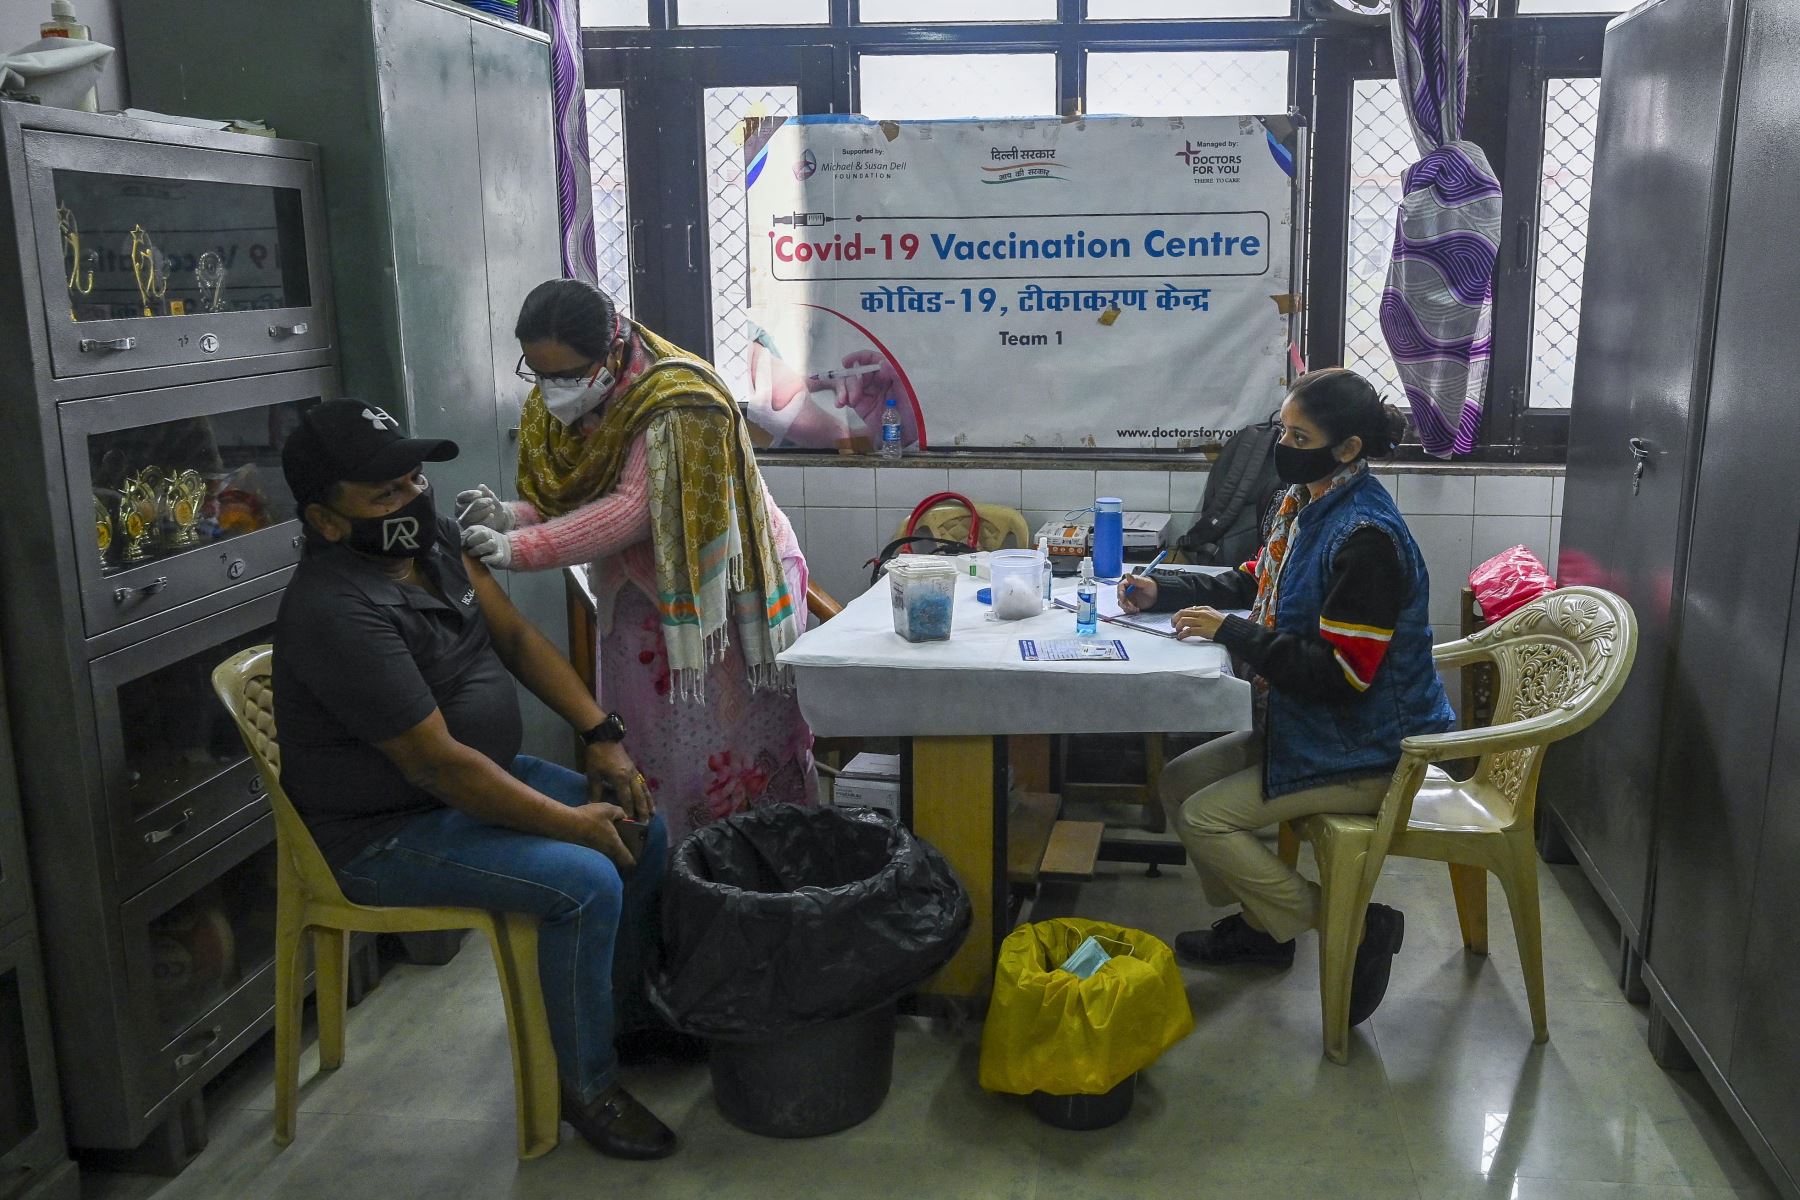 Un trabajador de la salud, inocula a un hombre con una dosis de la vacuna Covishield contra el coronavirus Covid-19 en un centro de vacunación instalado temporalmente en una escuela en Nueva Delhi. Foto: AFP